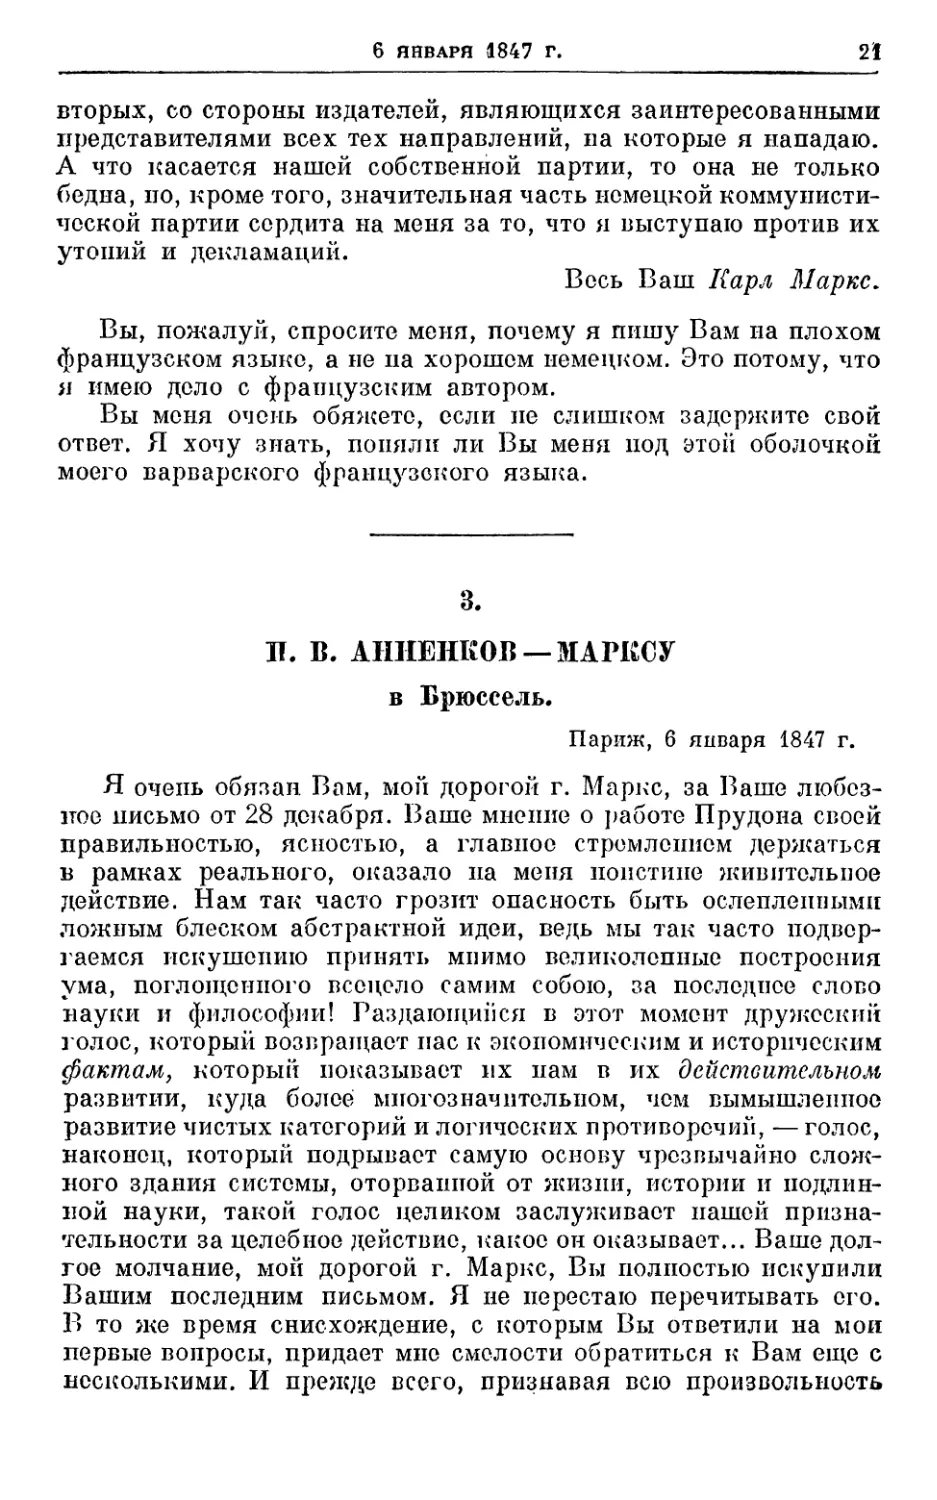 3. Анненков — Марксу, 6 января 1847г